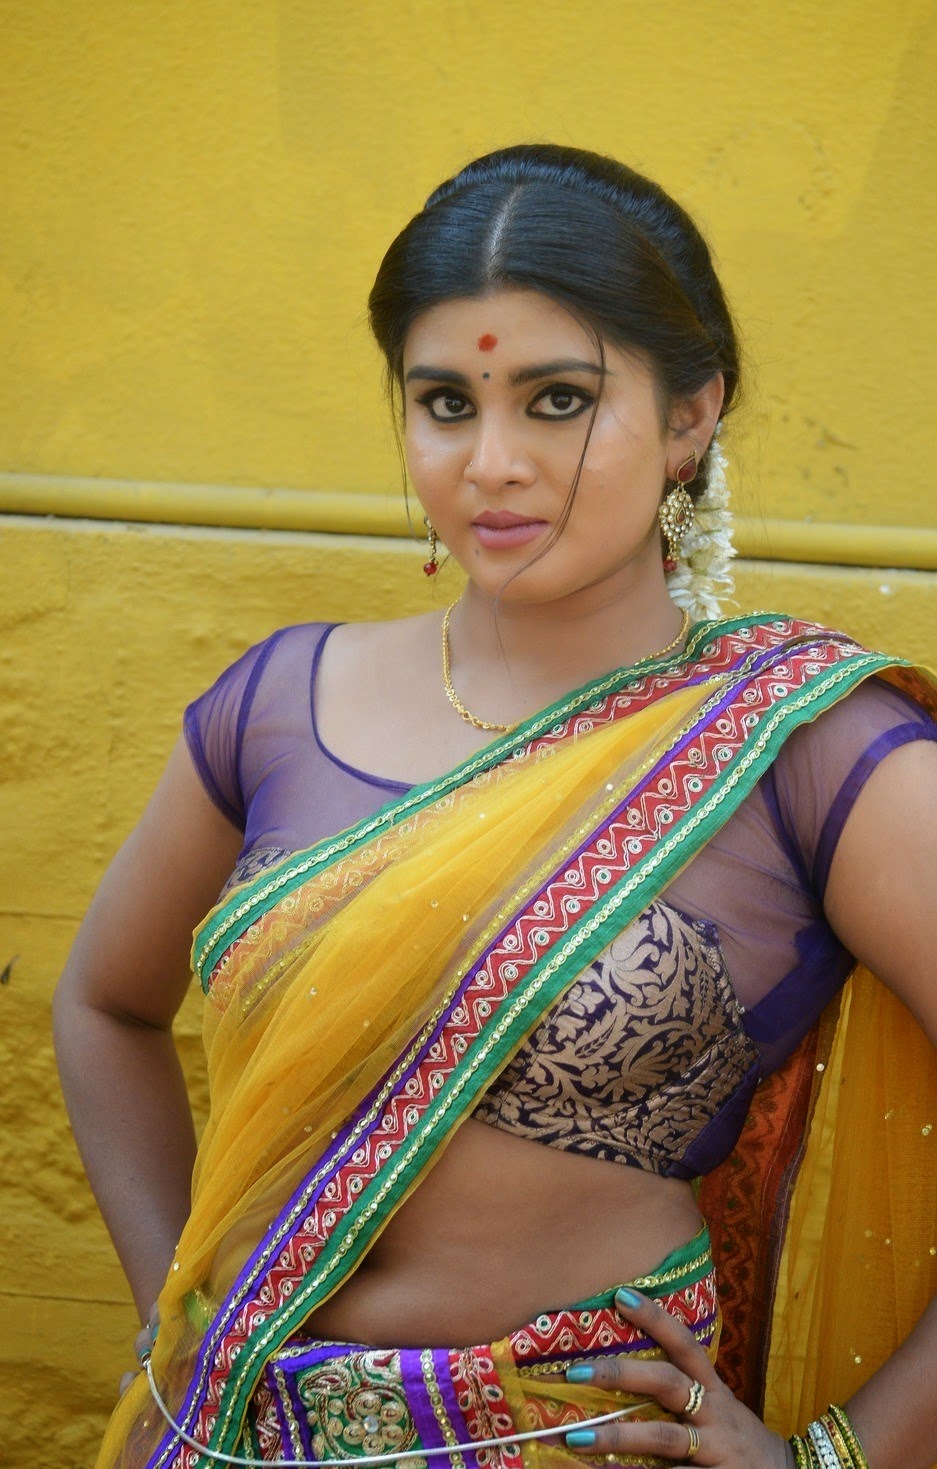 Hot Kerala Doodwali Mallu Aunty Hari Sexy Looking In Half Saree With